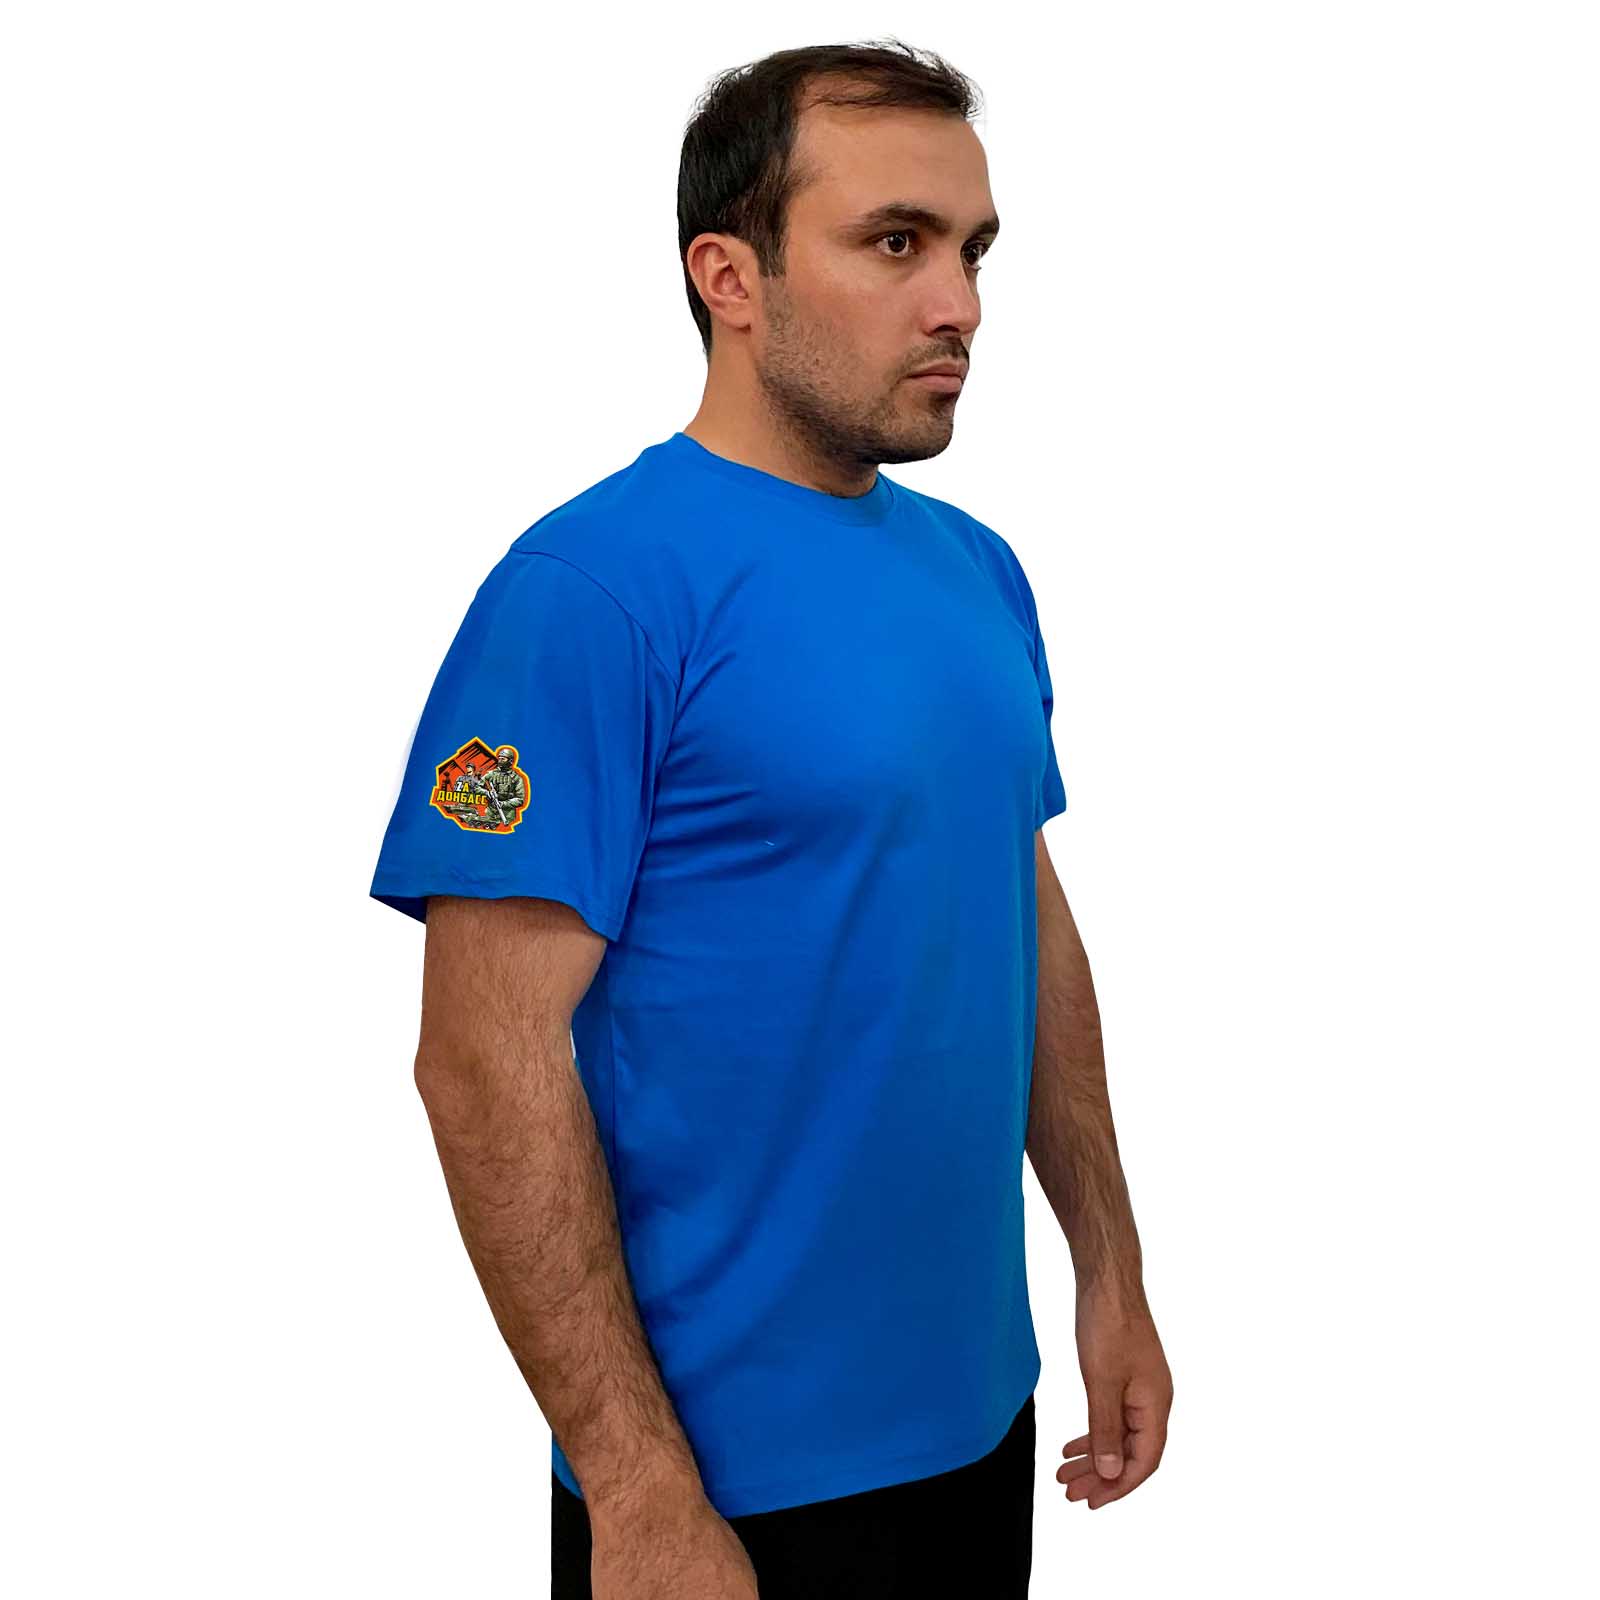 Купить крутую голубую футболку Zа Донбасс с доставкой в ваш город